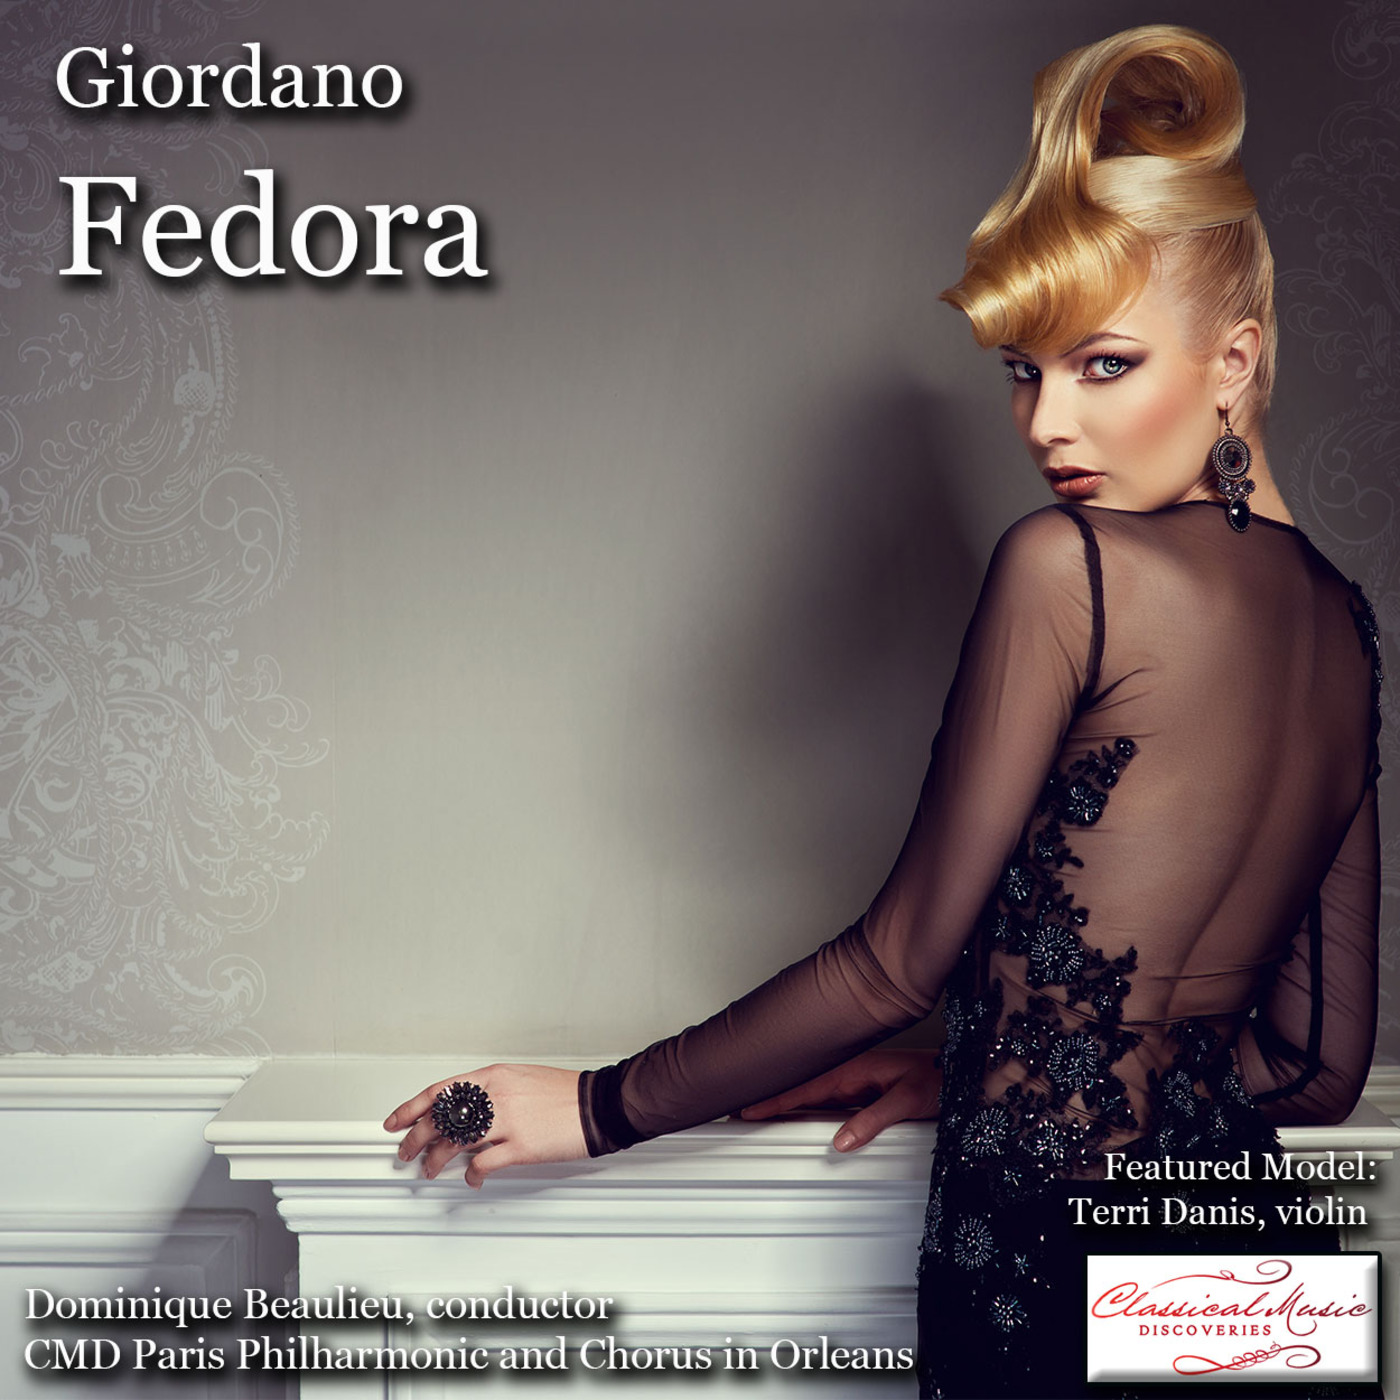 Episode 131: 17131 Giordano: Fedora